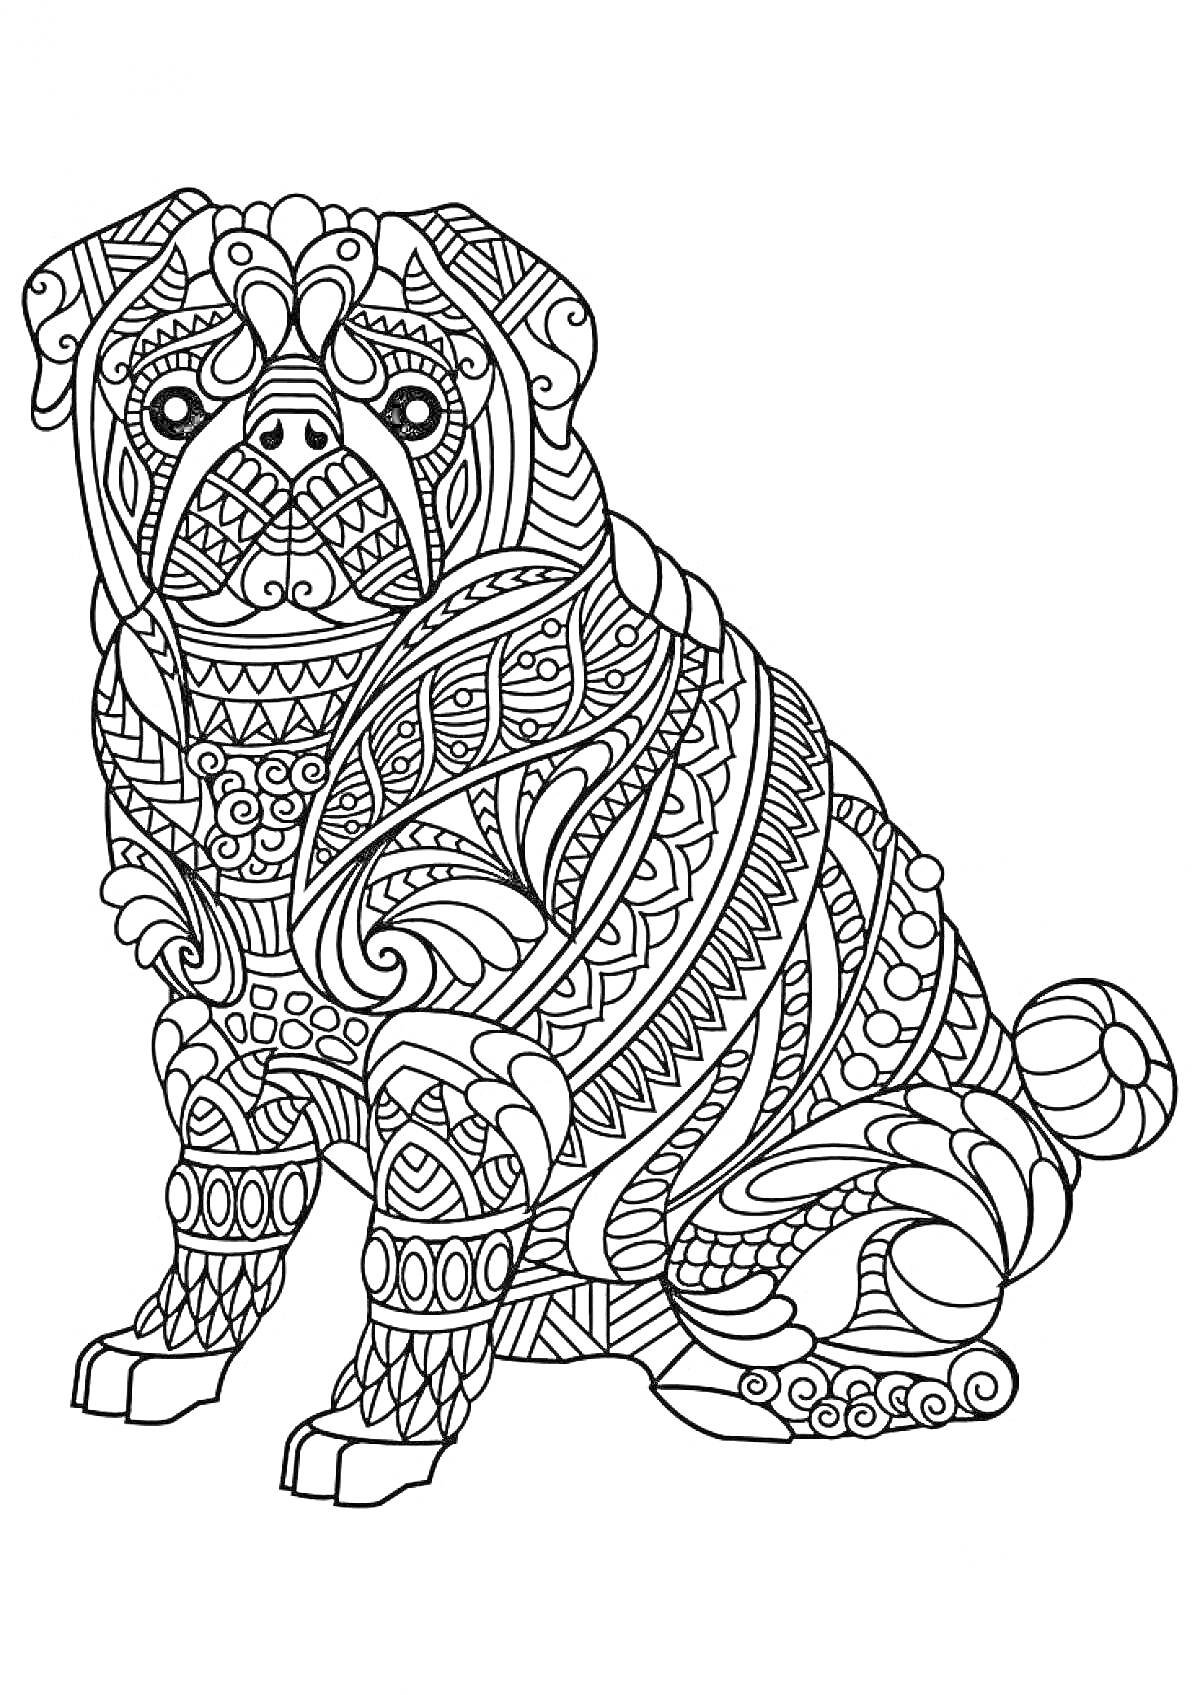 Раскраска Антистресс раскраска - собака с декоративными узорами, абстрактные и геометрические элементы